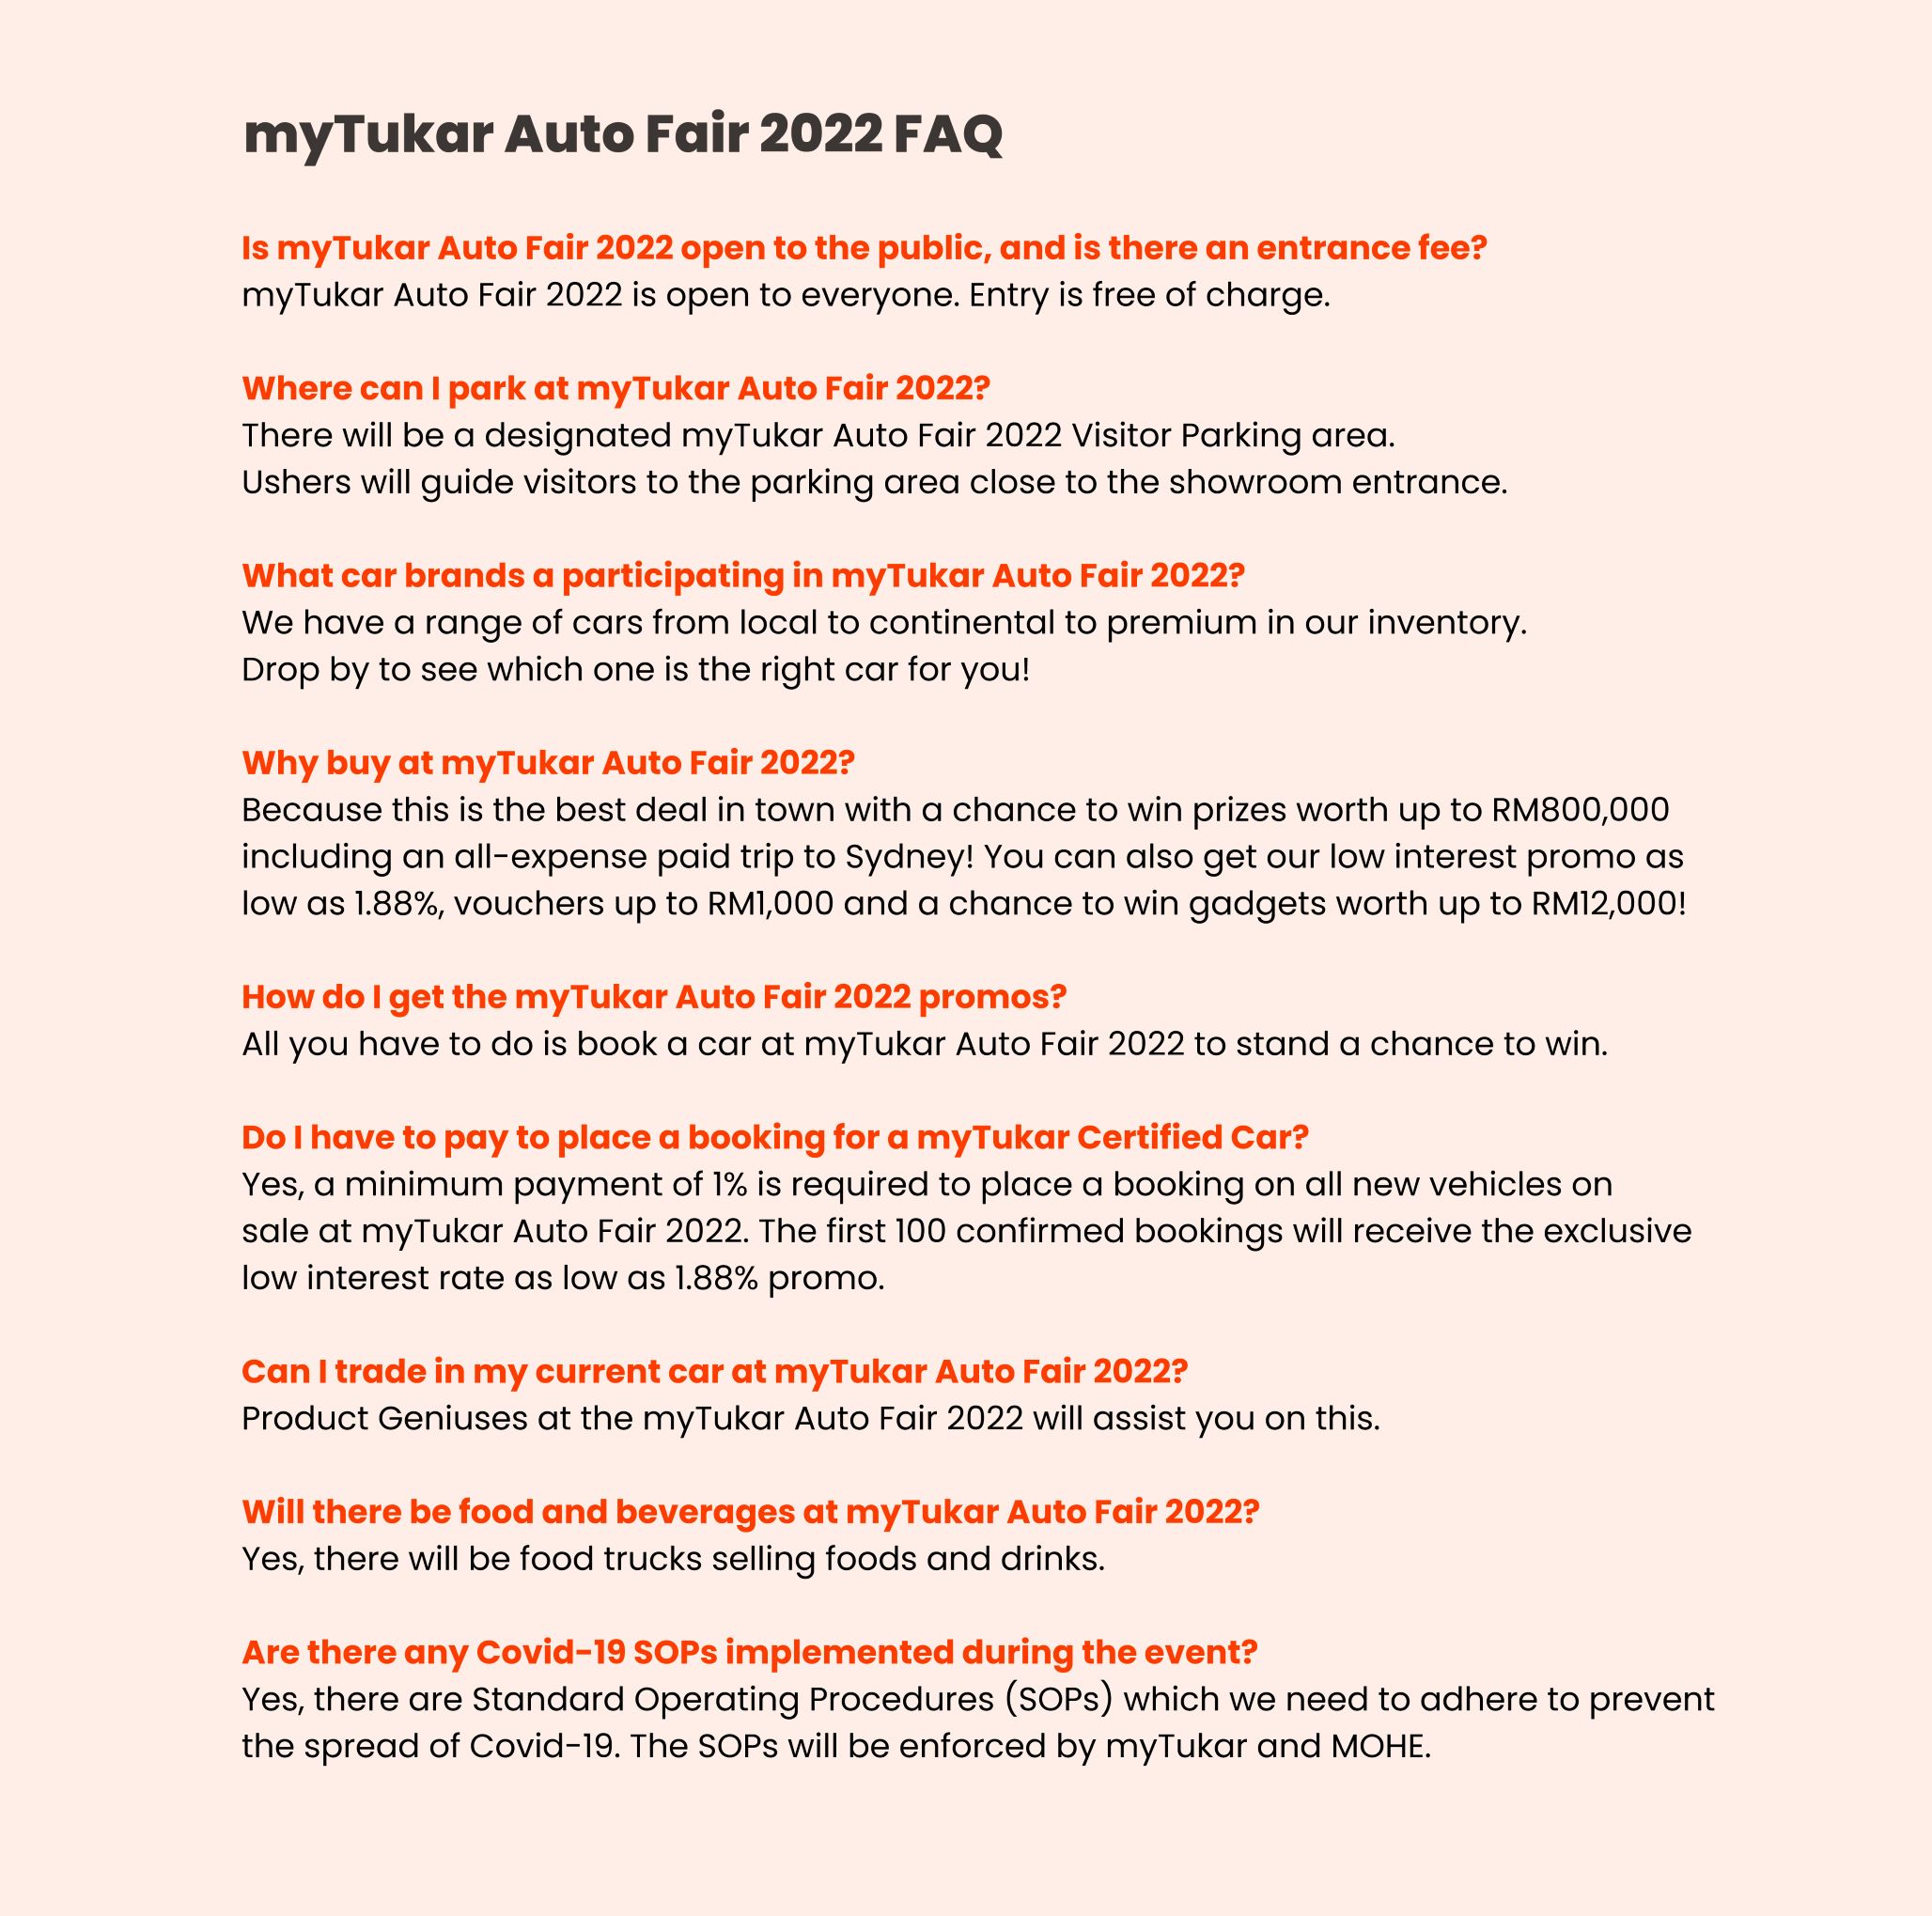 myTukar Auto Fair FAQ